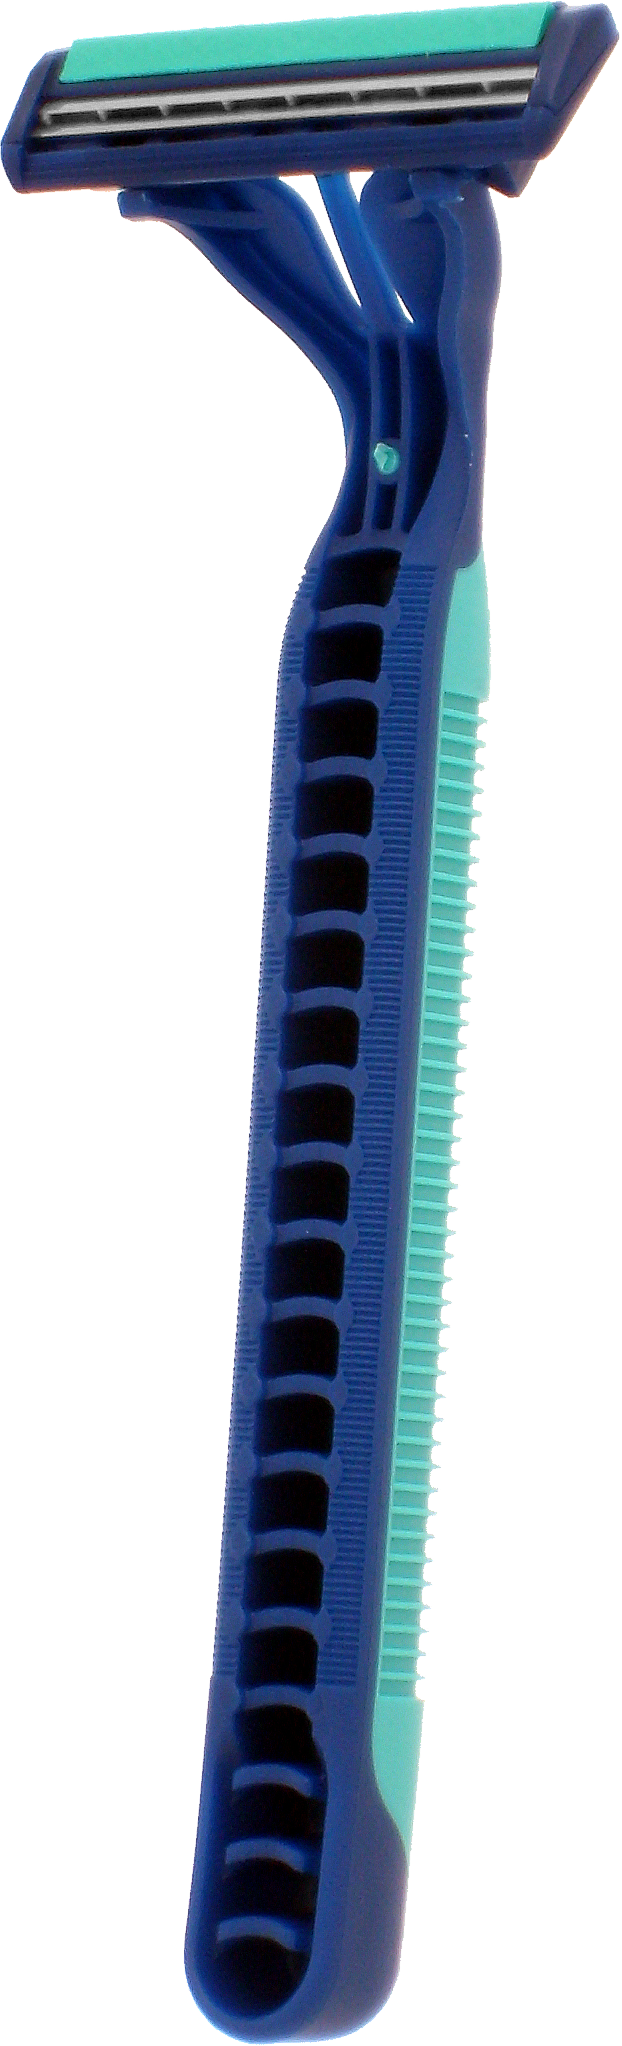 Gillette razor PNG image free Download 